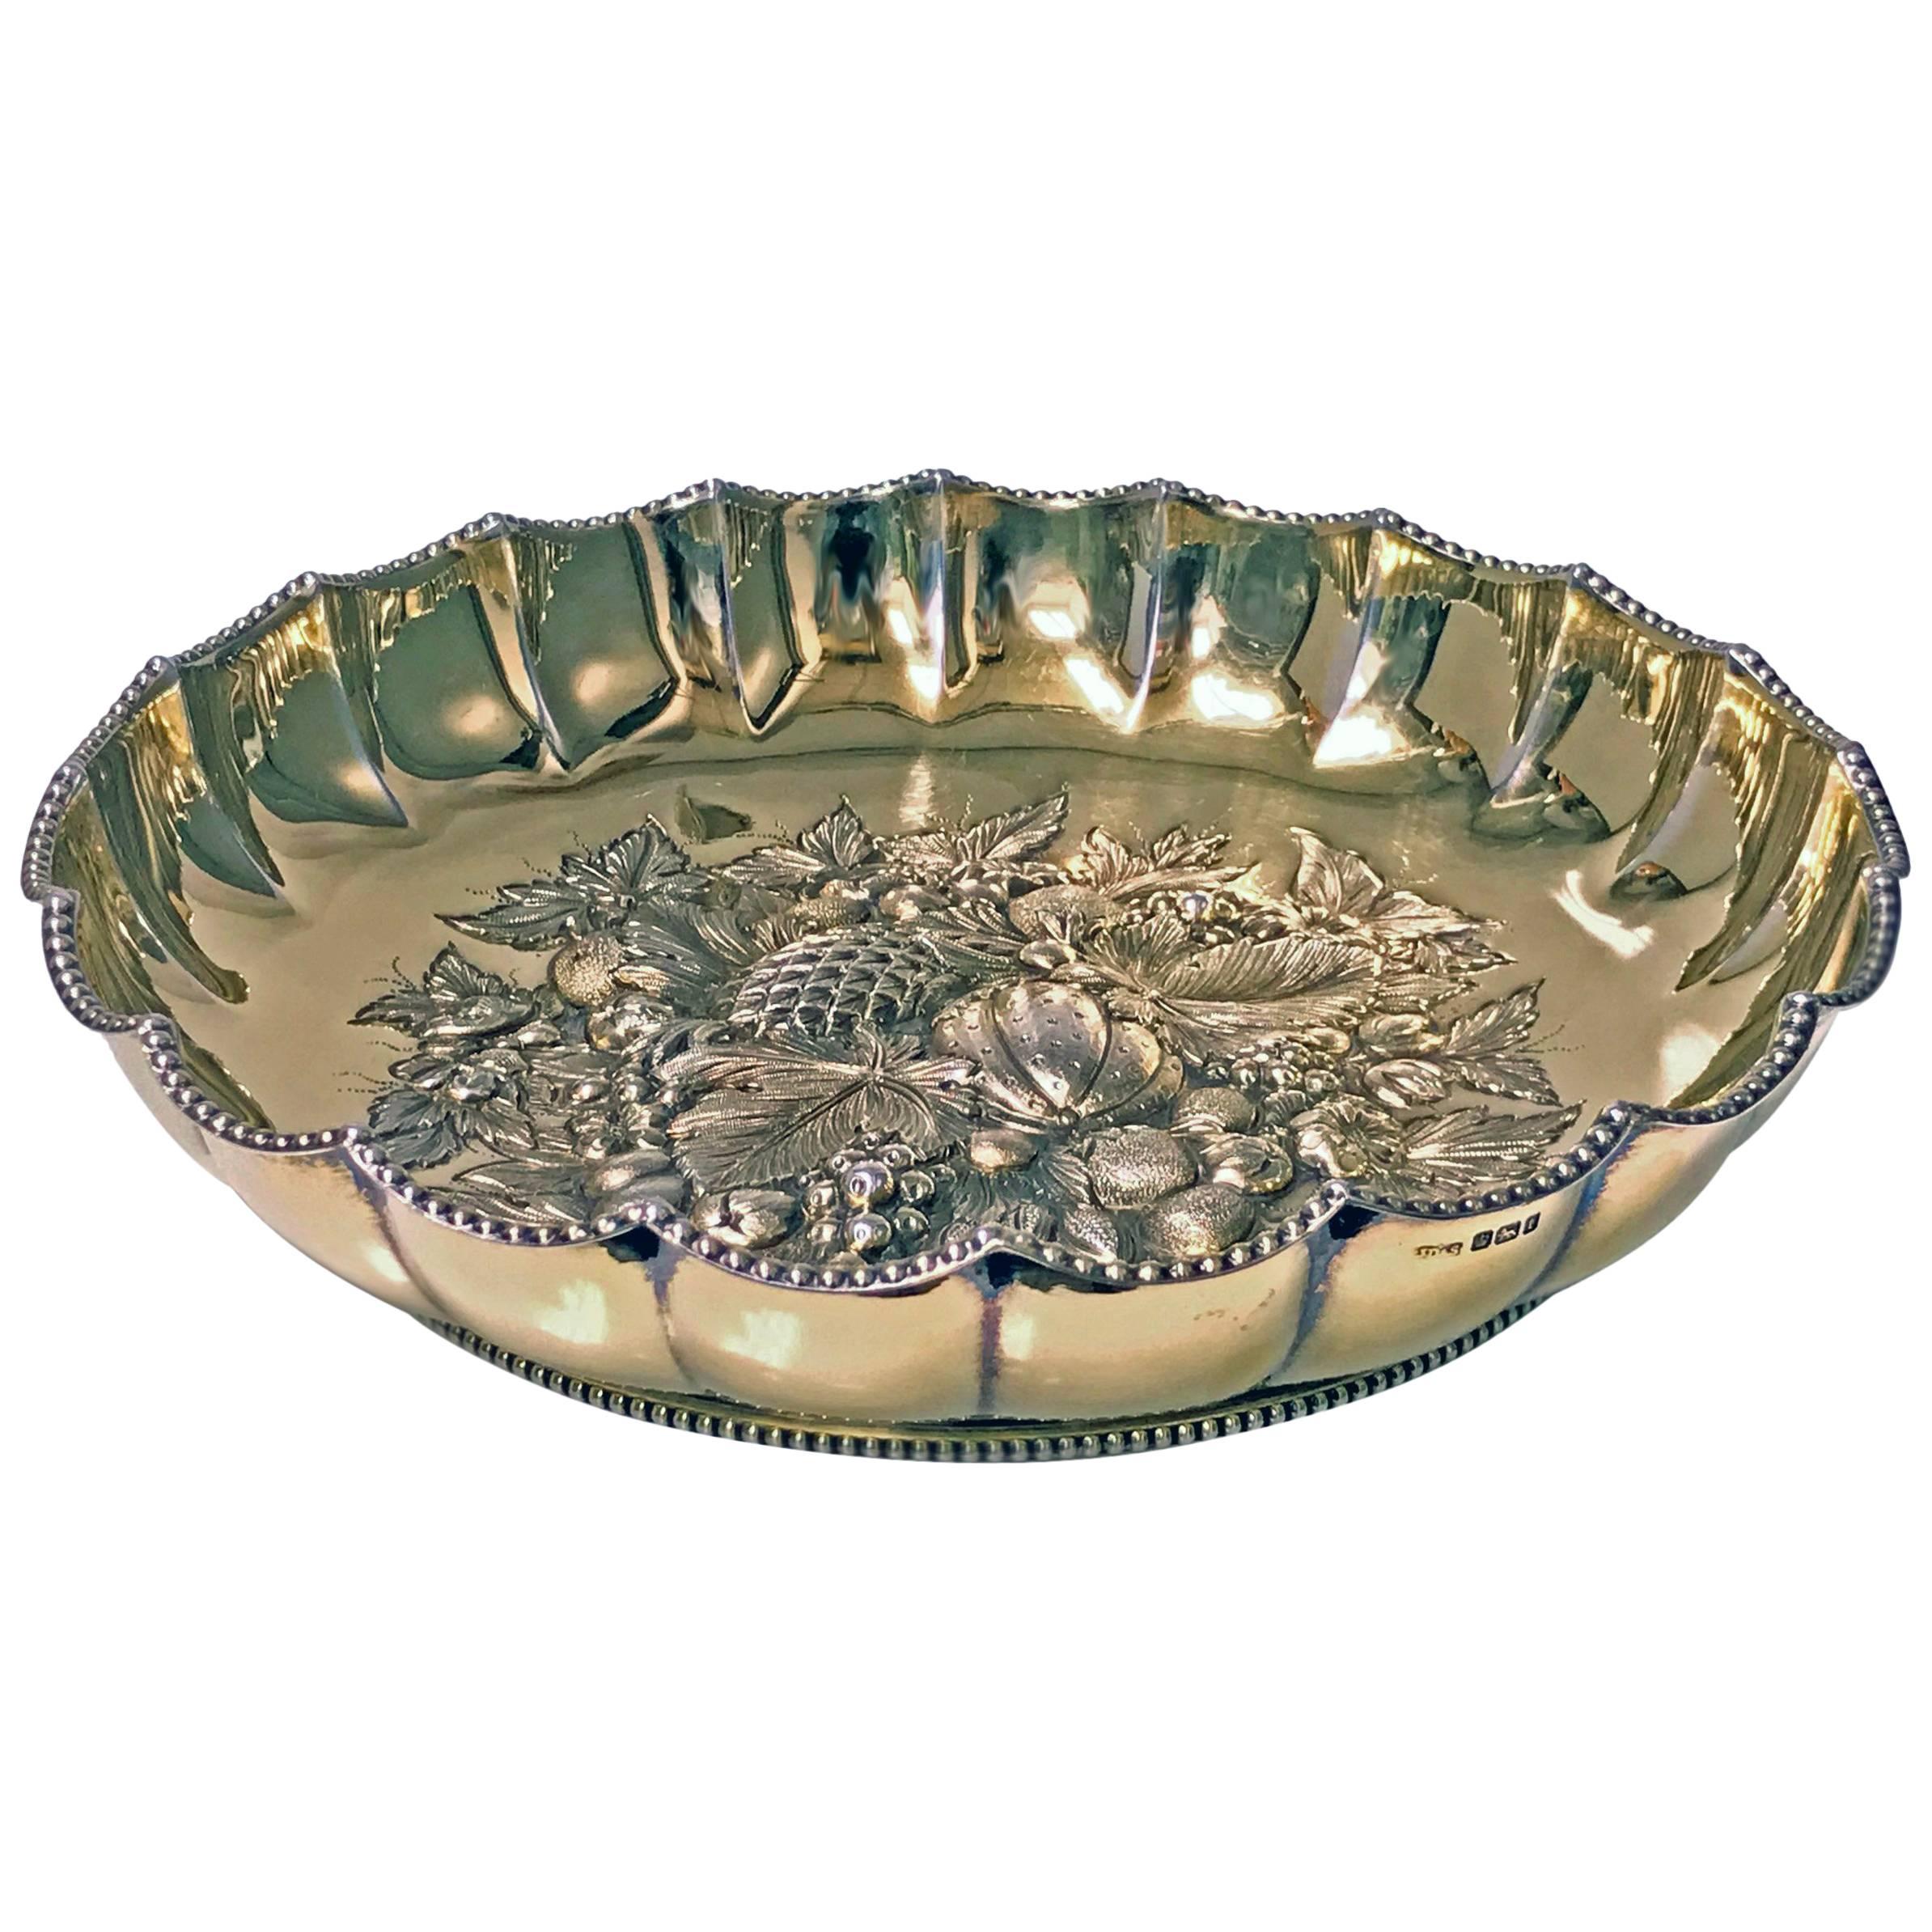 Fine Antique English Silver Gilt Fruit Bowl, 1911 James Dixon & Sons